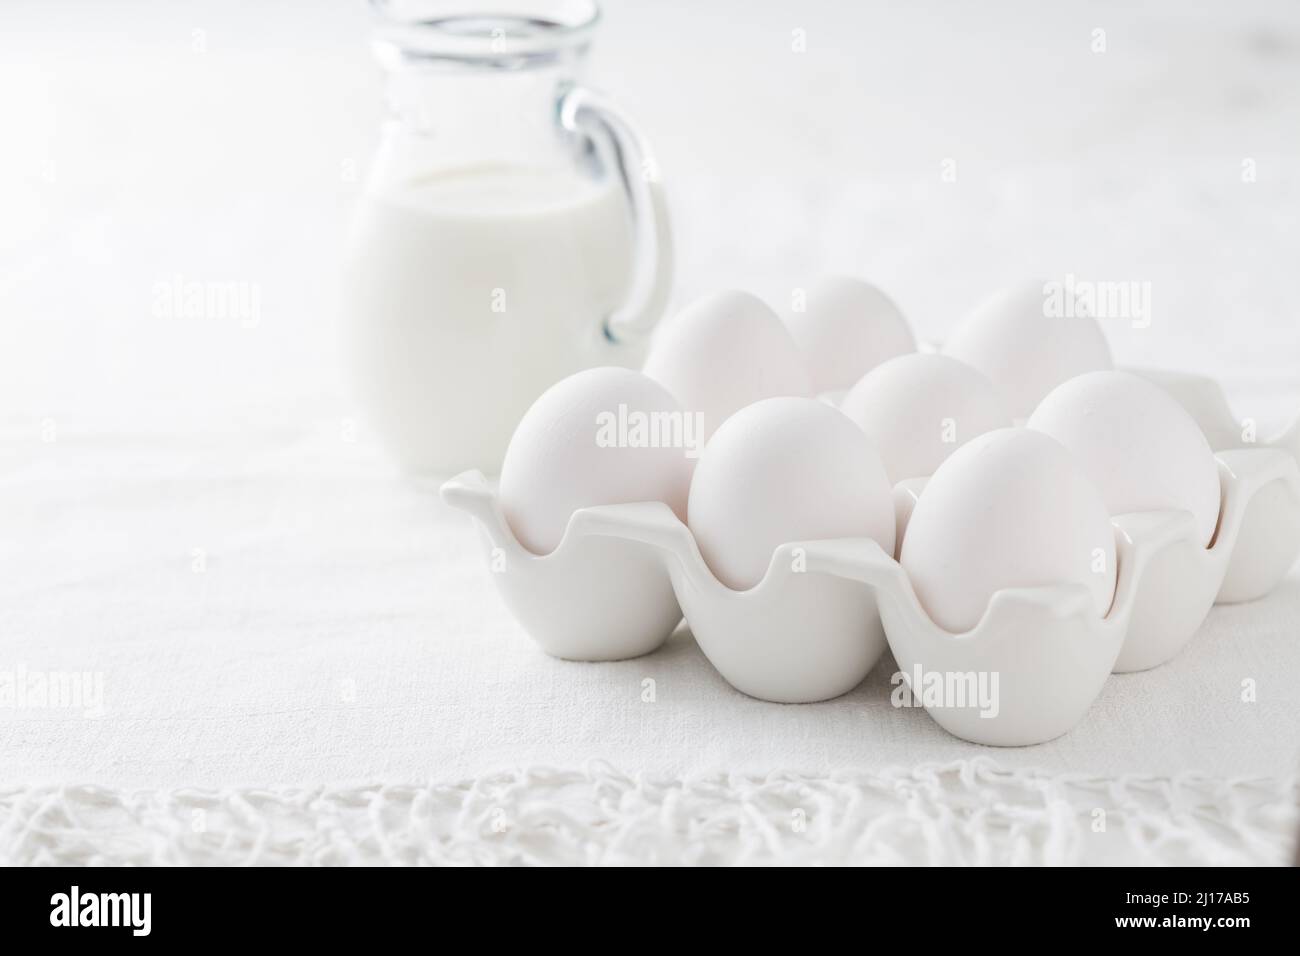 Organic milk and fresh eggs on white kitchen table Stock Photo